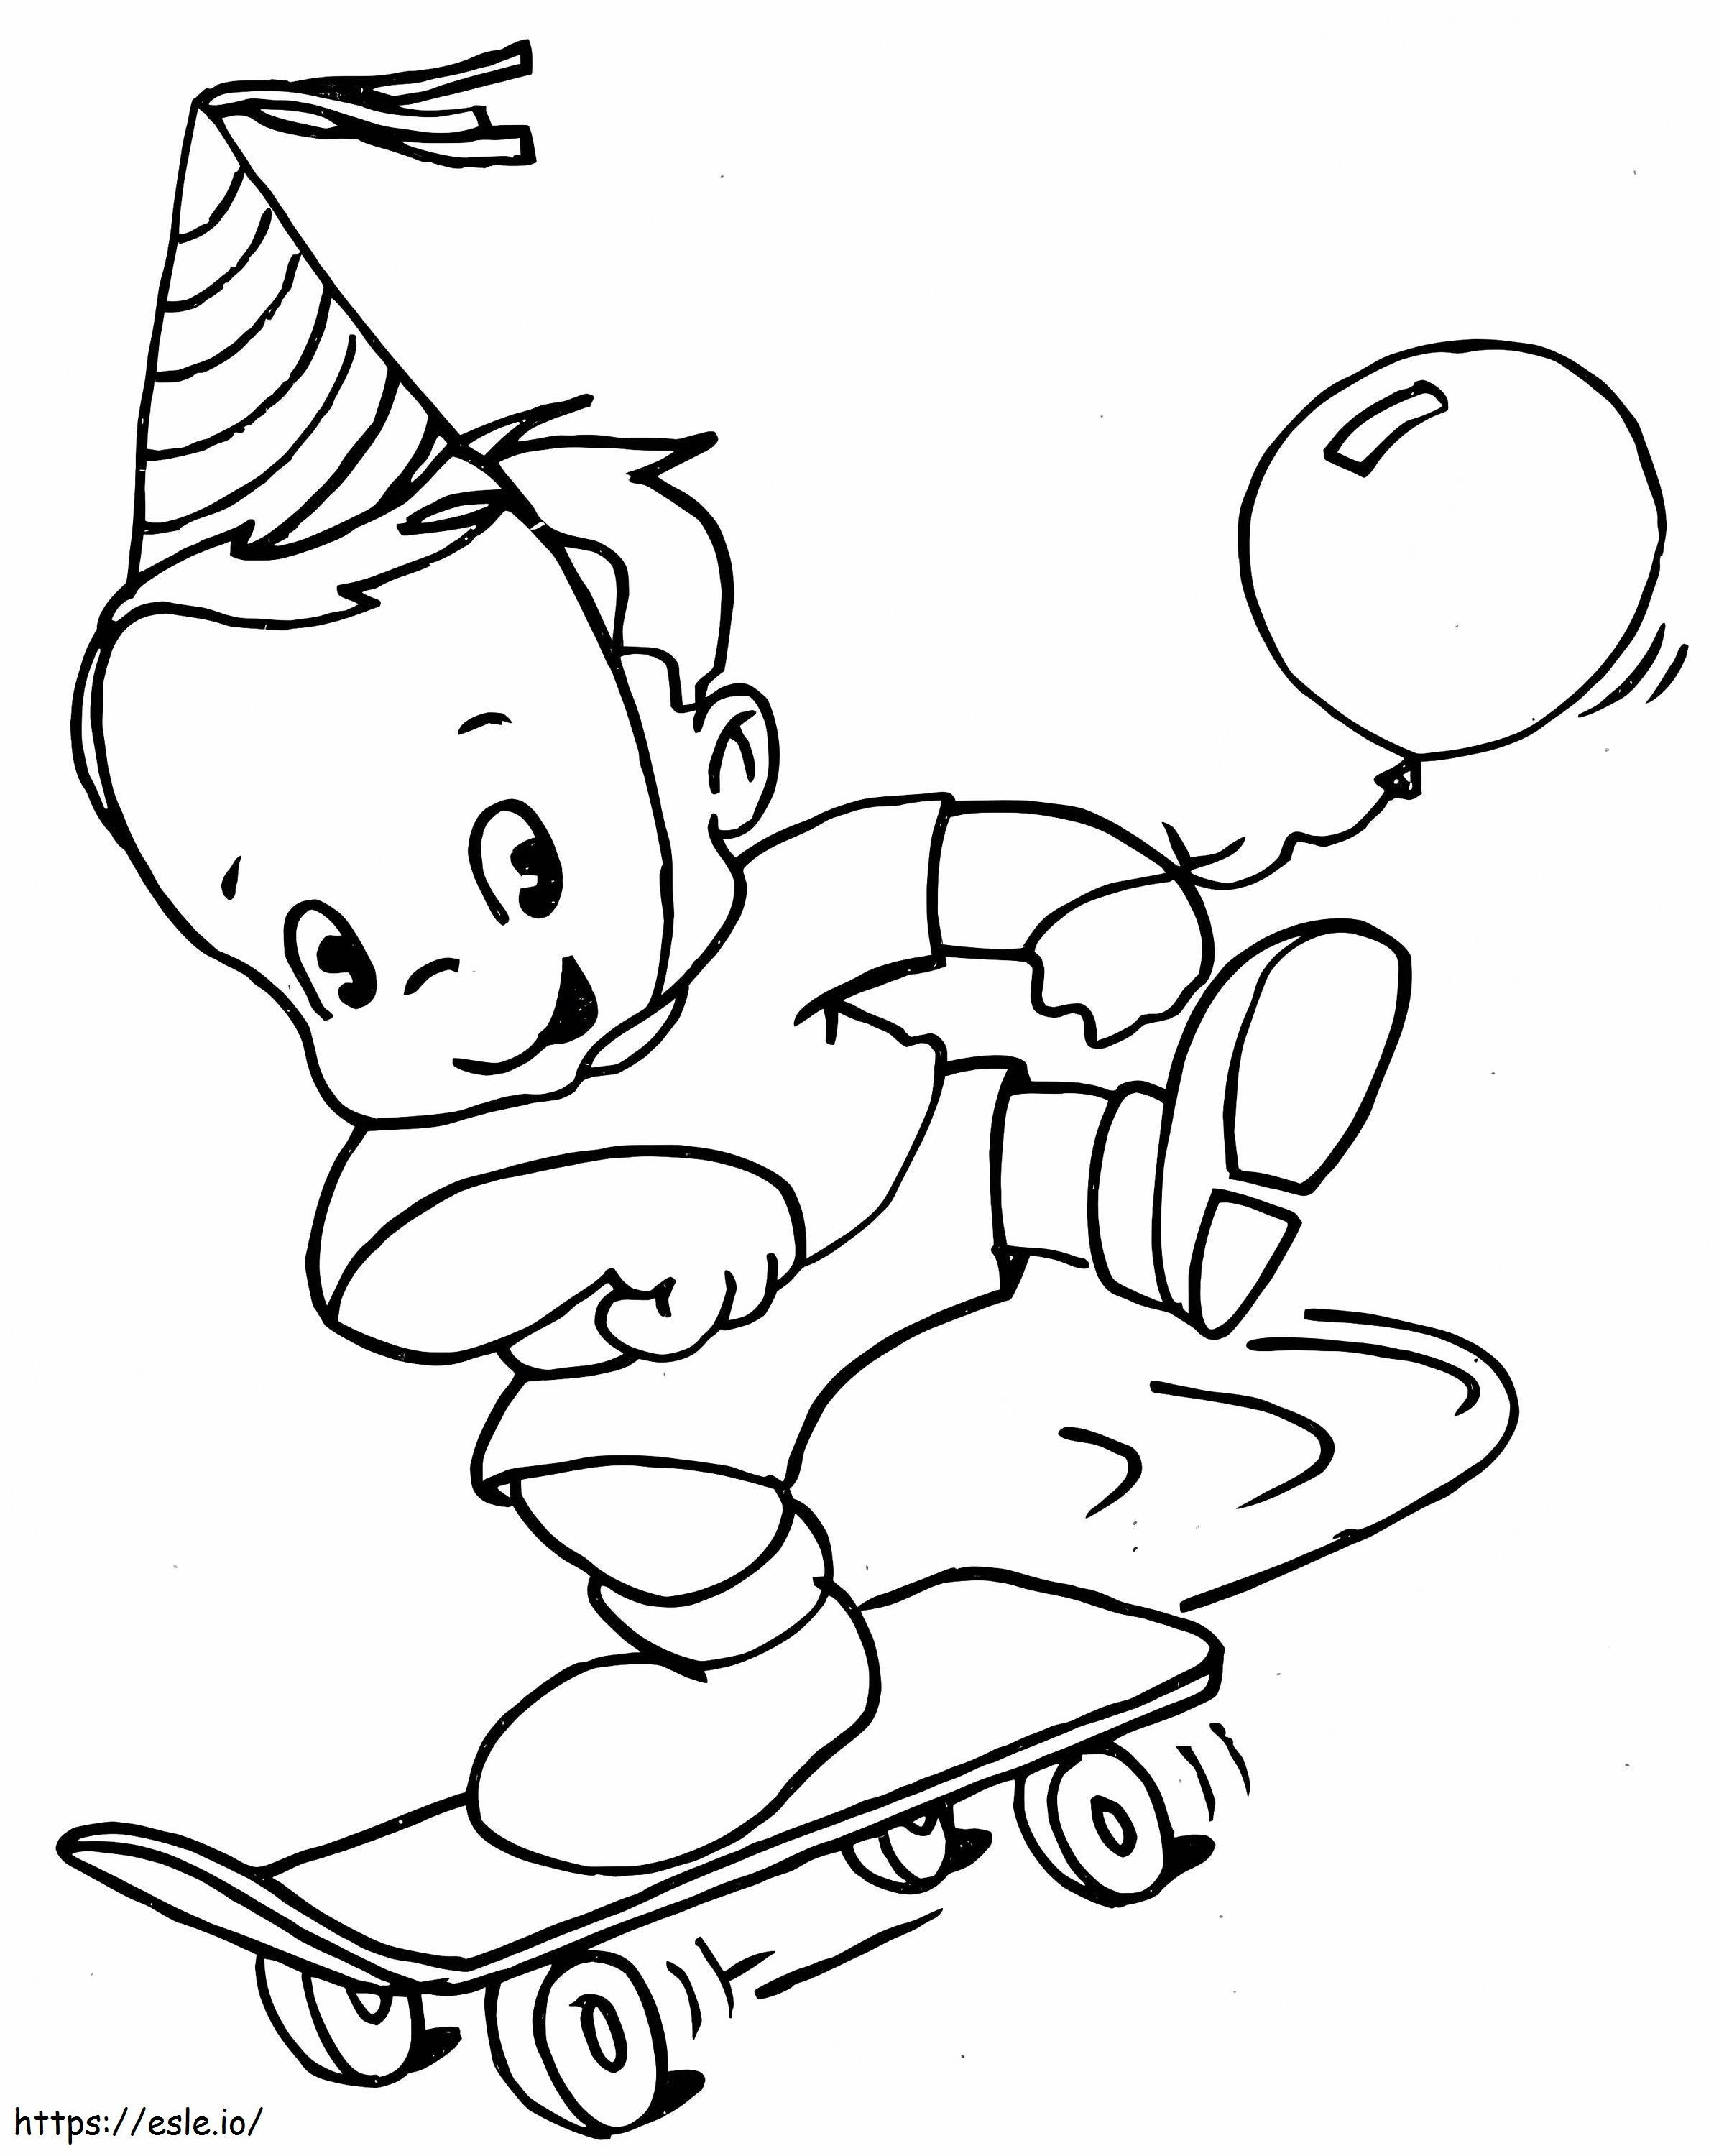 Uma criança com skate para colorir